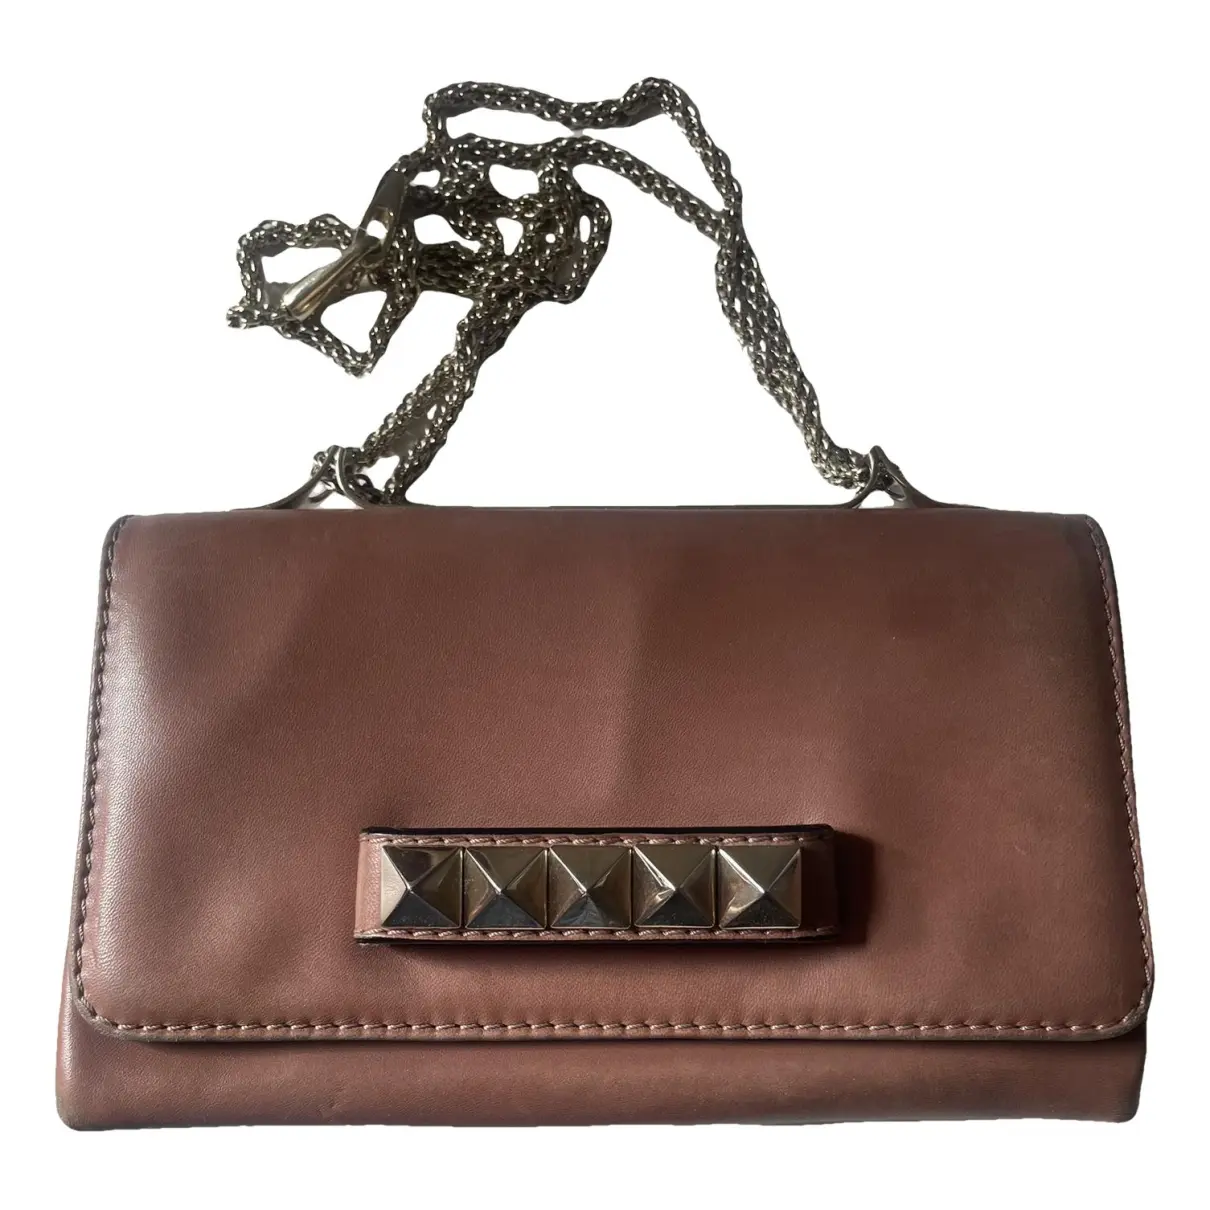 Vavavoom leather handbag